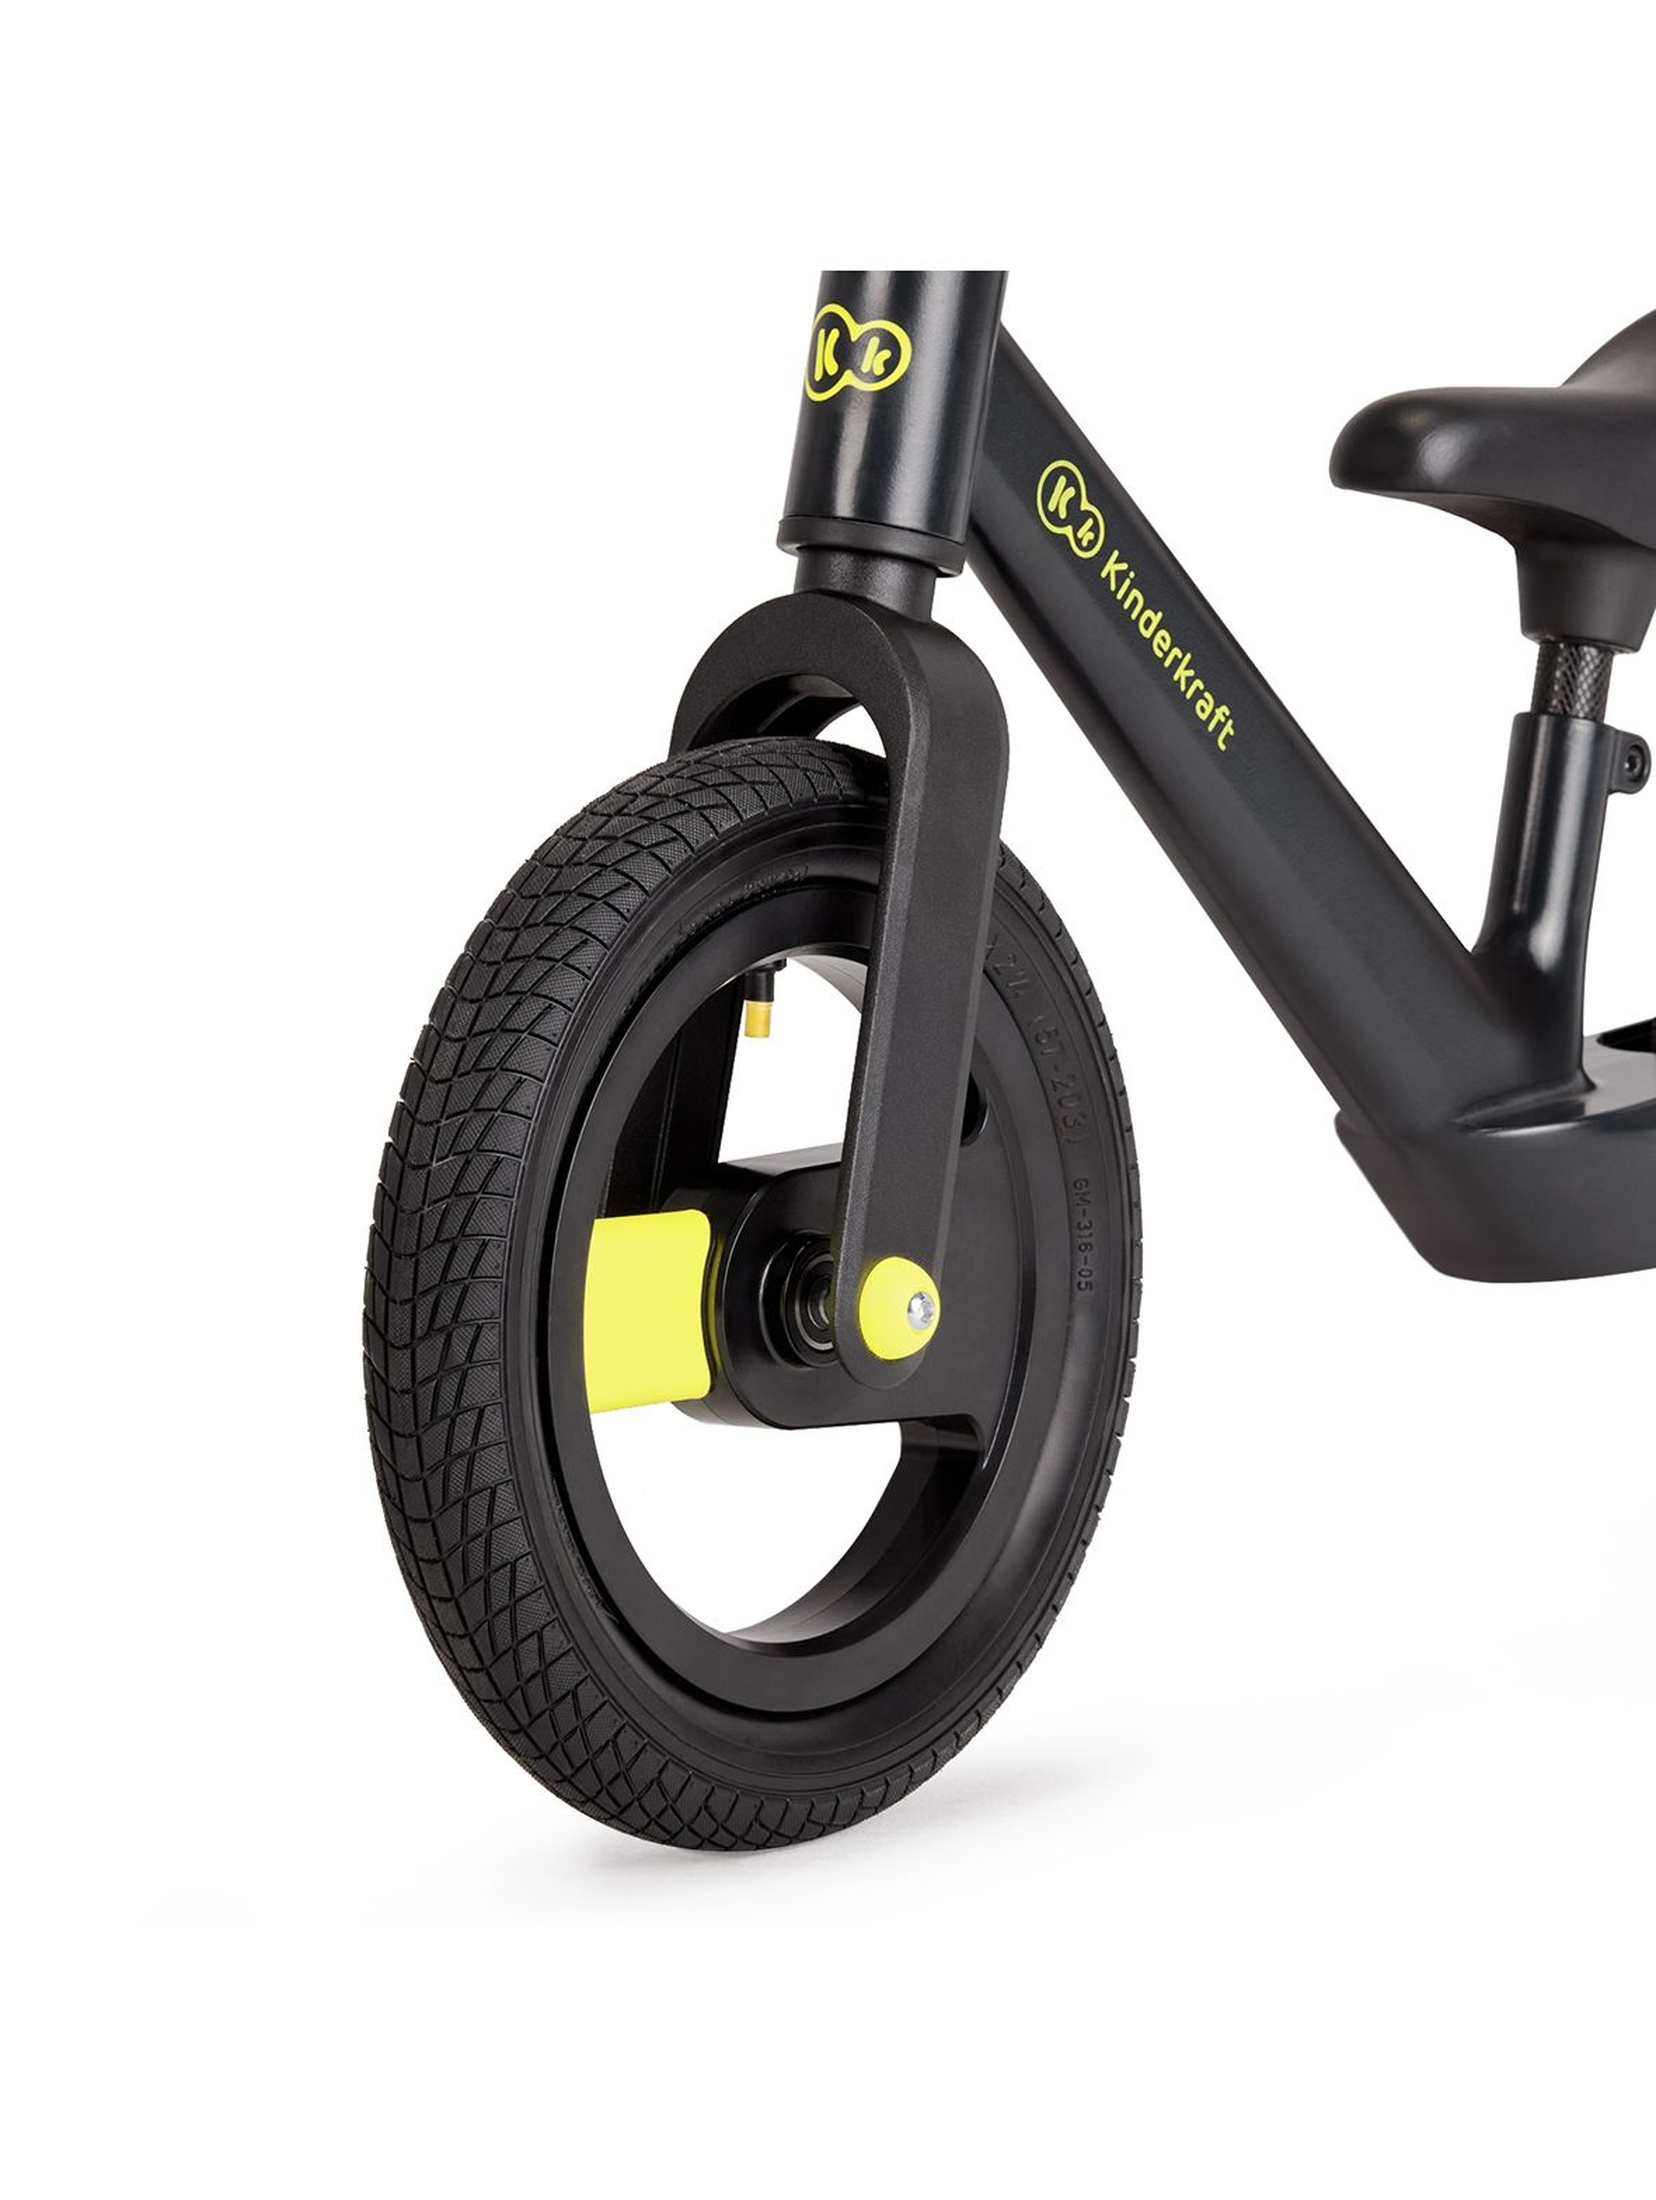 Kinderkraft rowerek biegowy Goswift - czarny wiek 3+